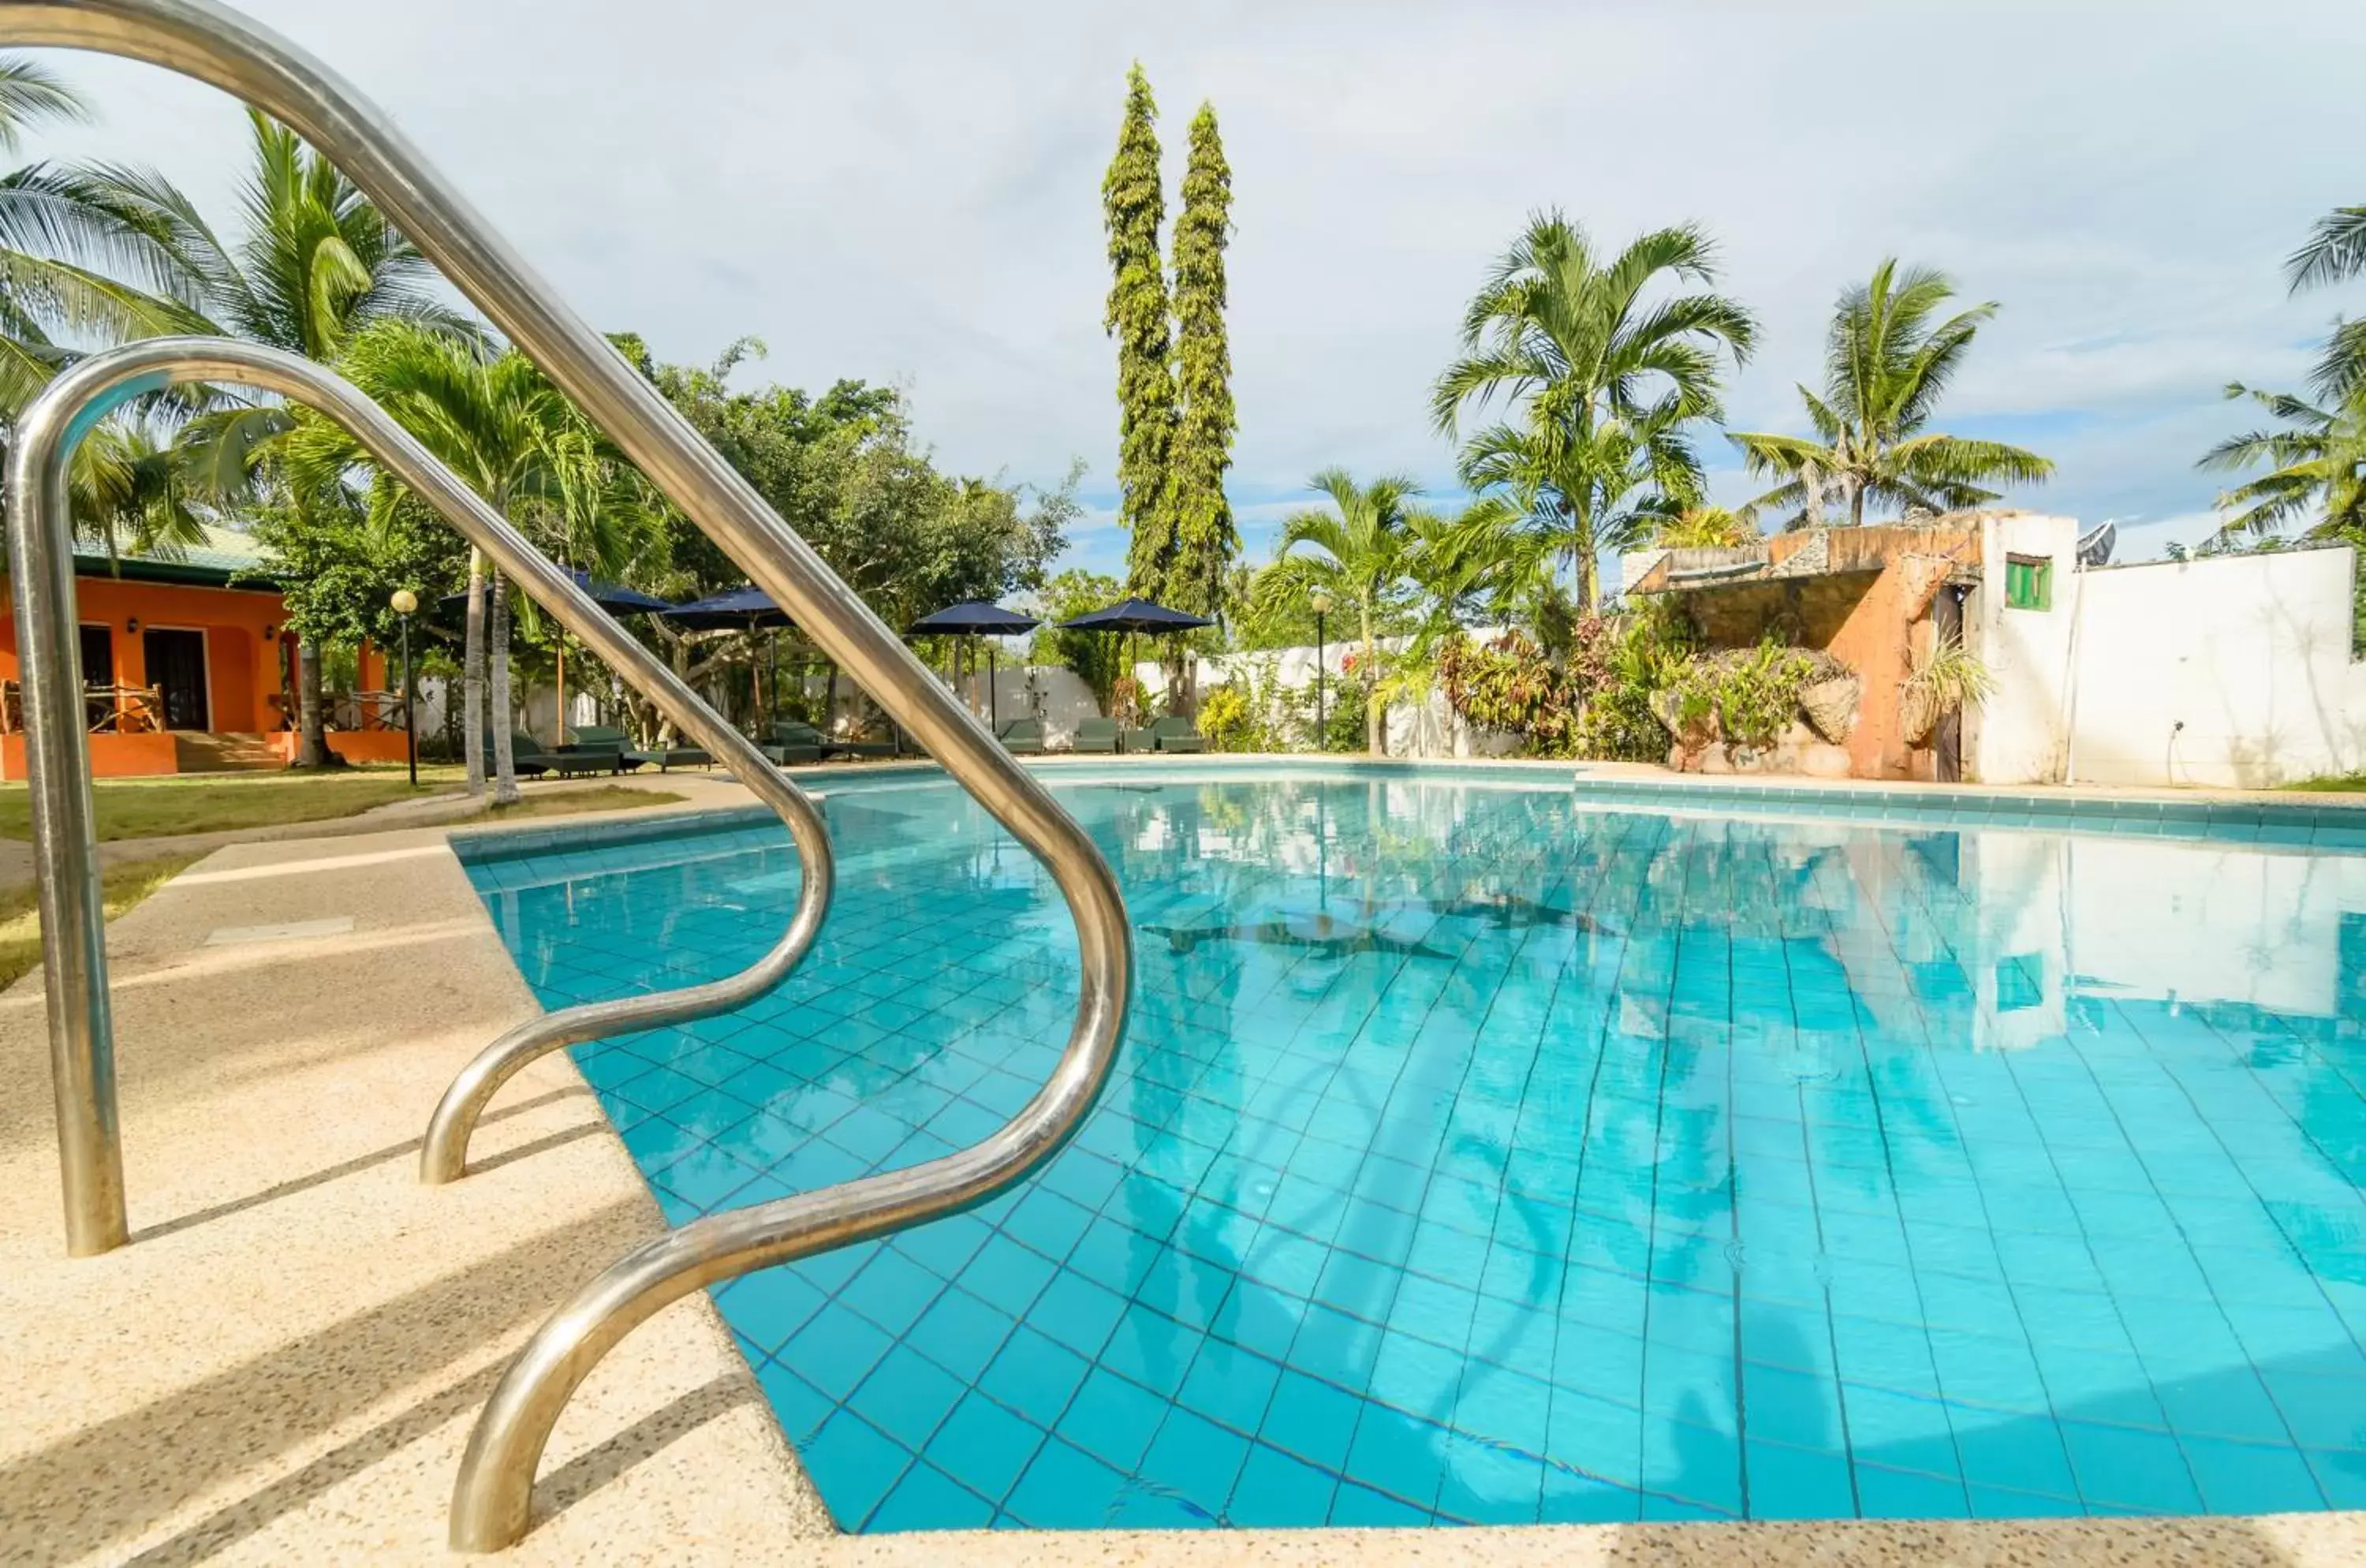 Swimming pool in Bohol Sea Resort